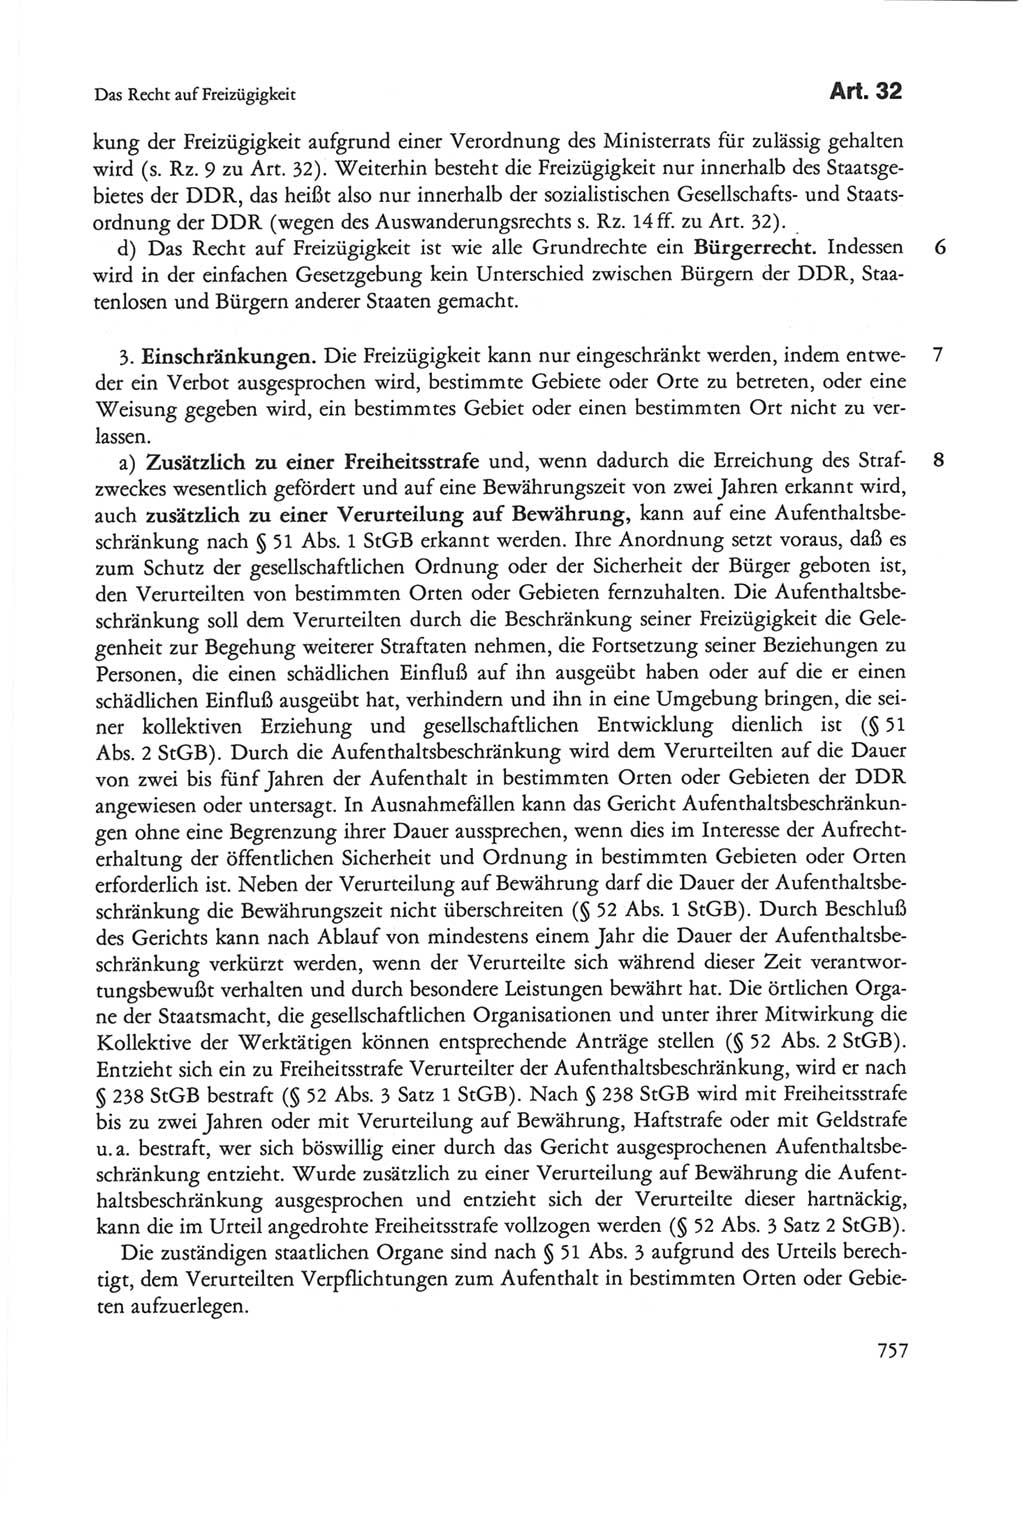 Die sozialistische Verfassung der Deutschen Demokratischen Republik (DDR), Kommentar 1982, Seite 757 (Soz. Verf. DDR Komm. 1982, S. 757)